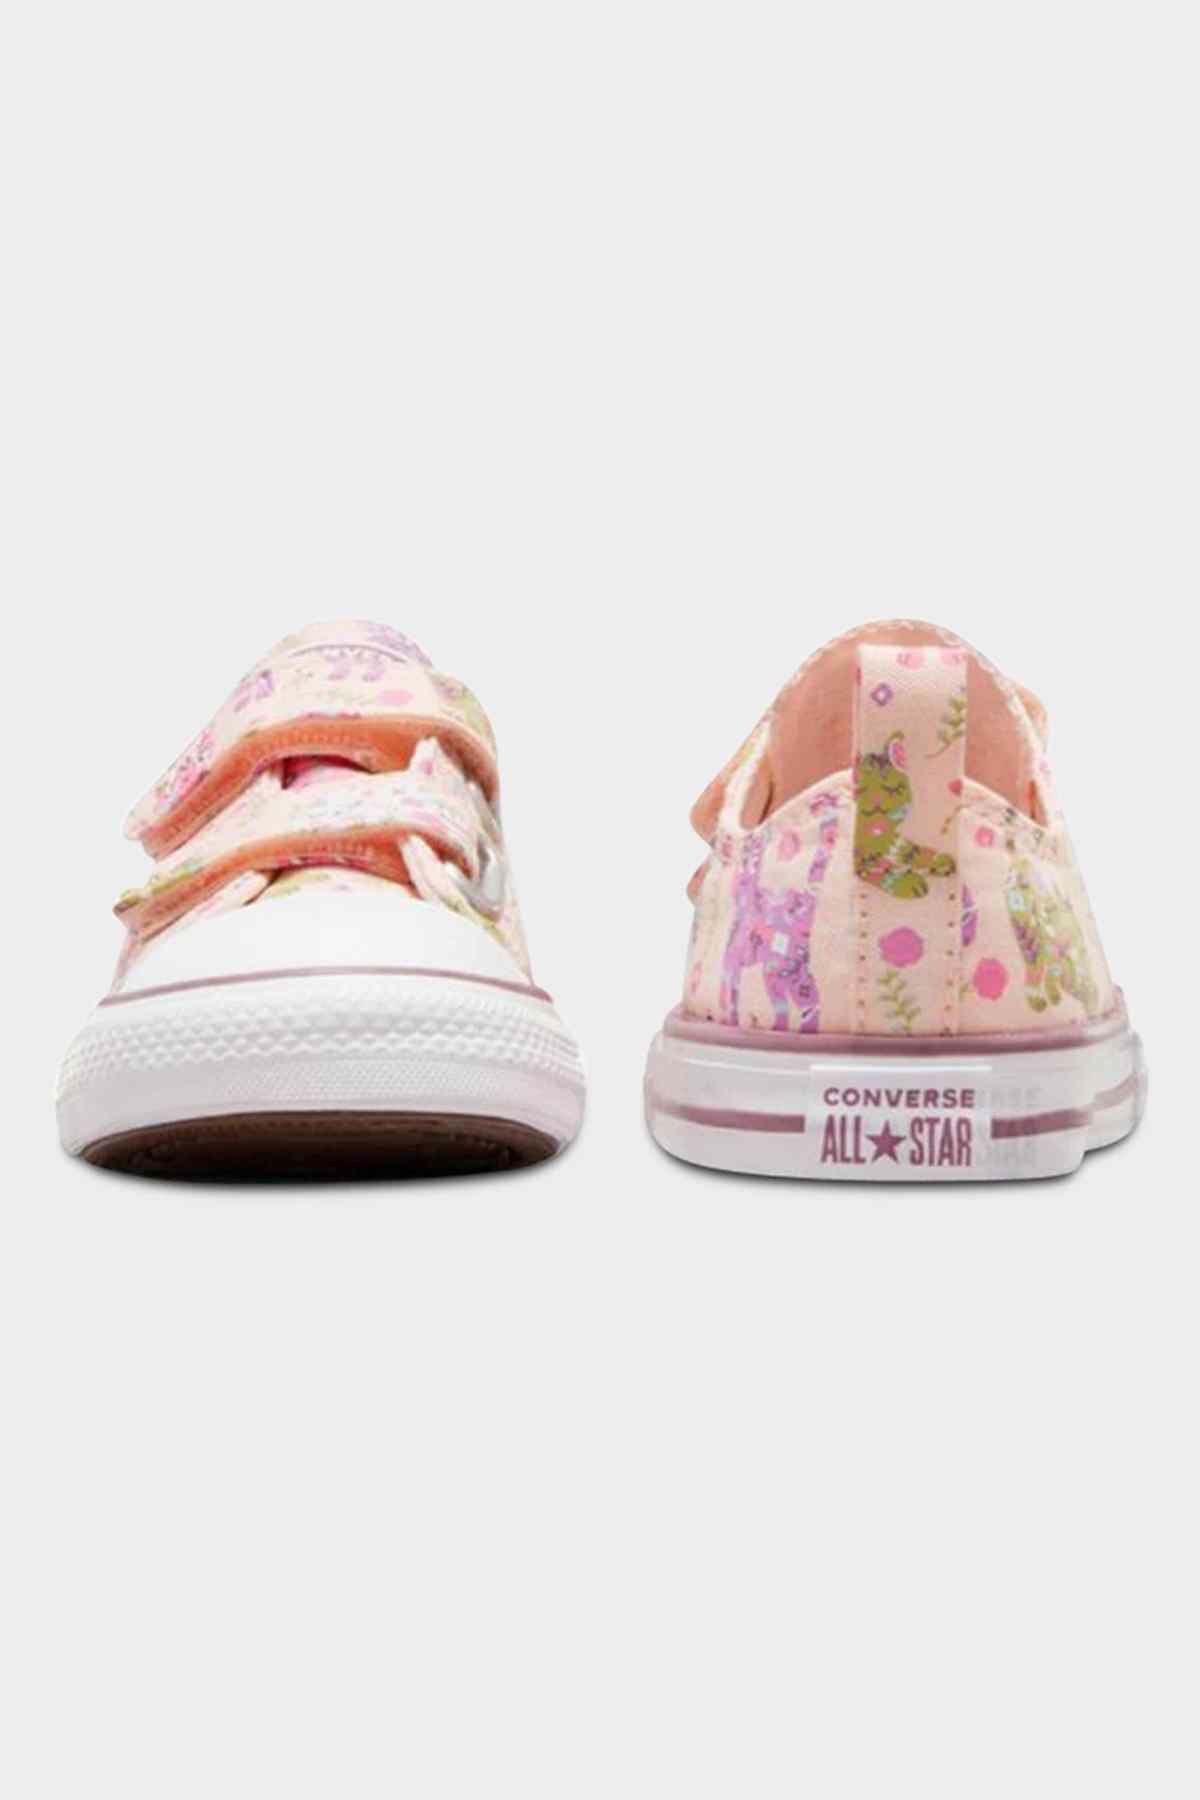 Converse Infant CT Feline Florals 2V Fable Pink/Grape Fizz/White